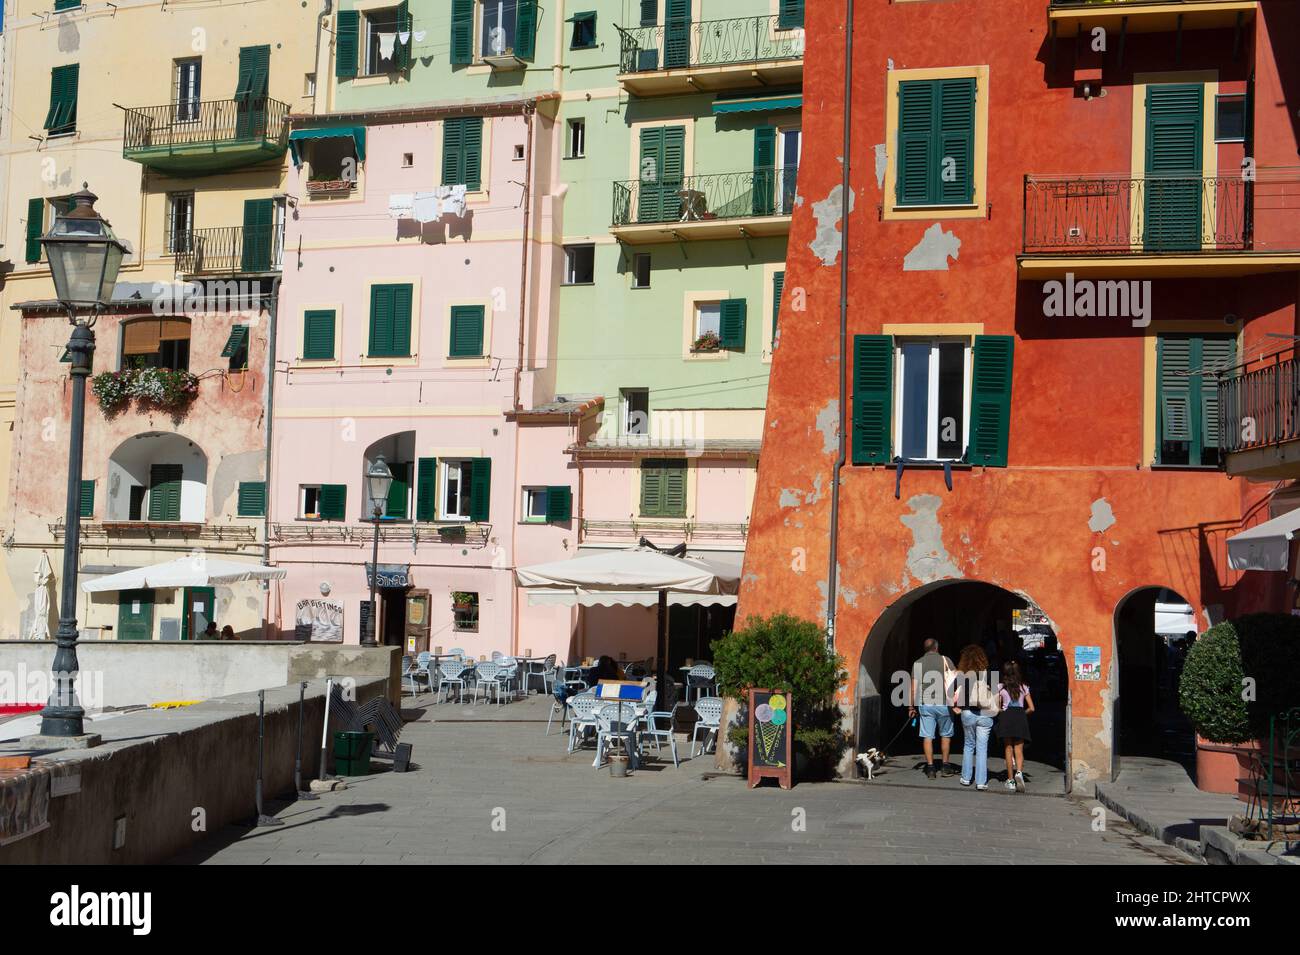 Europa, Italia, Città di Camogli sul Mediterraneo in Liguria. Edifici colorati. Foto Stock